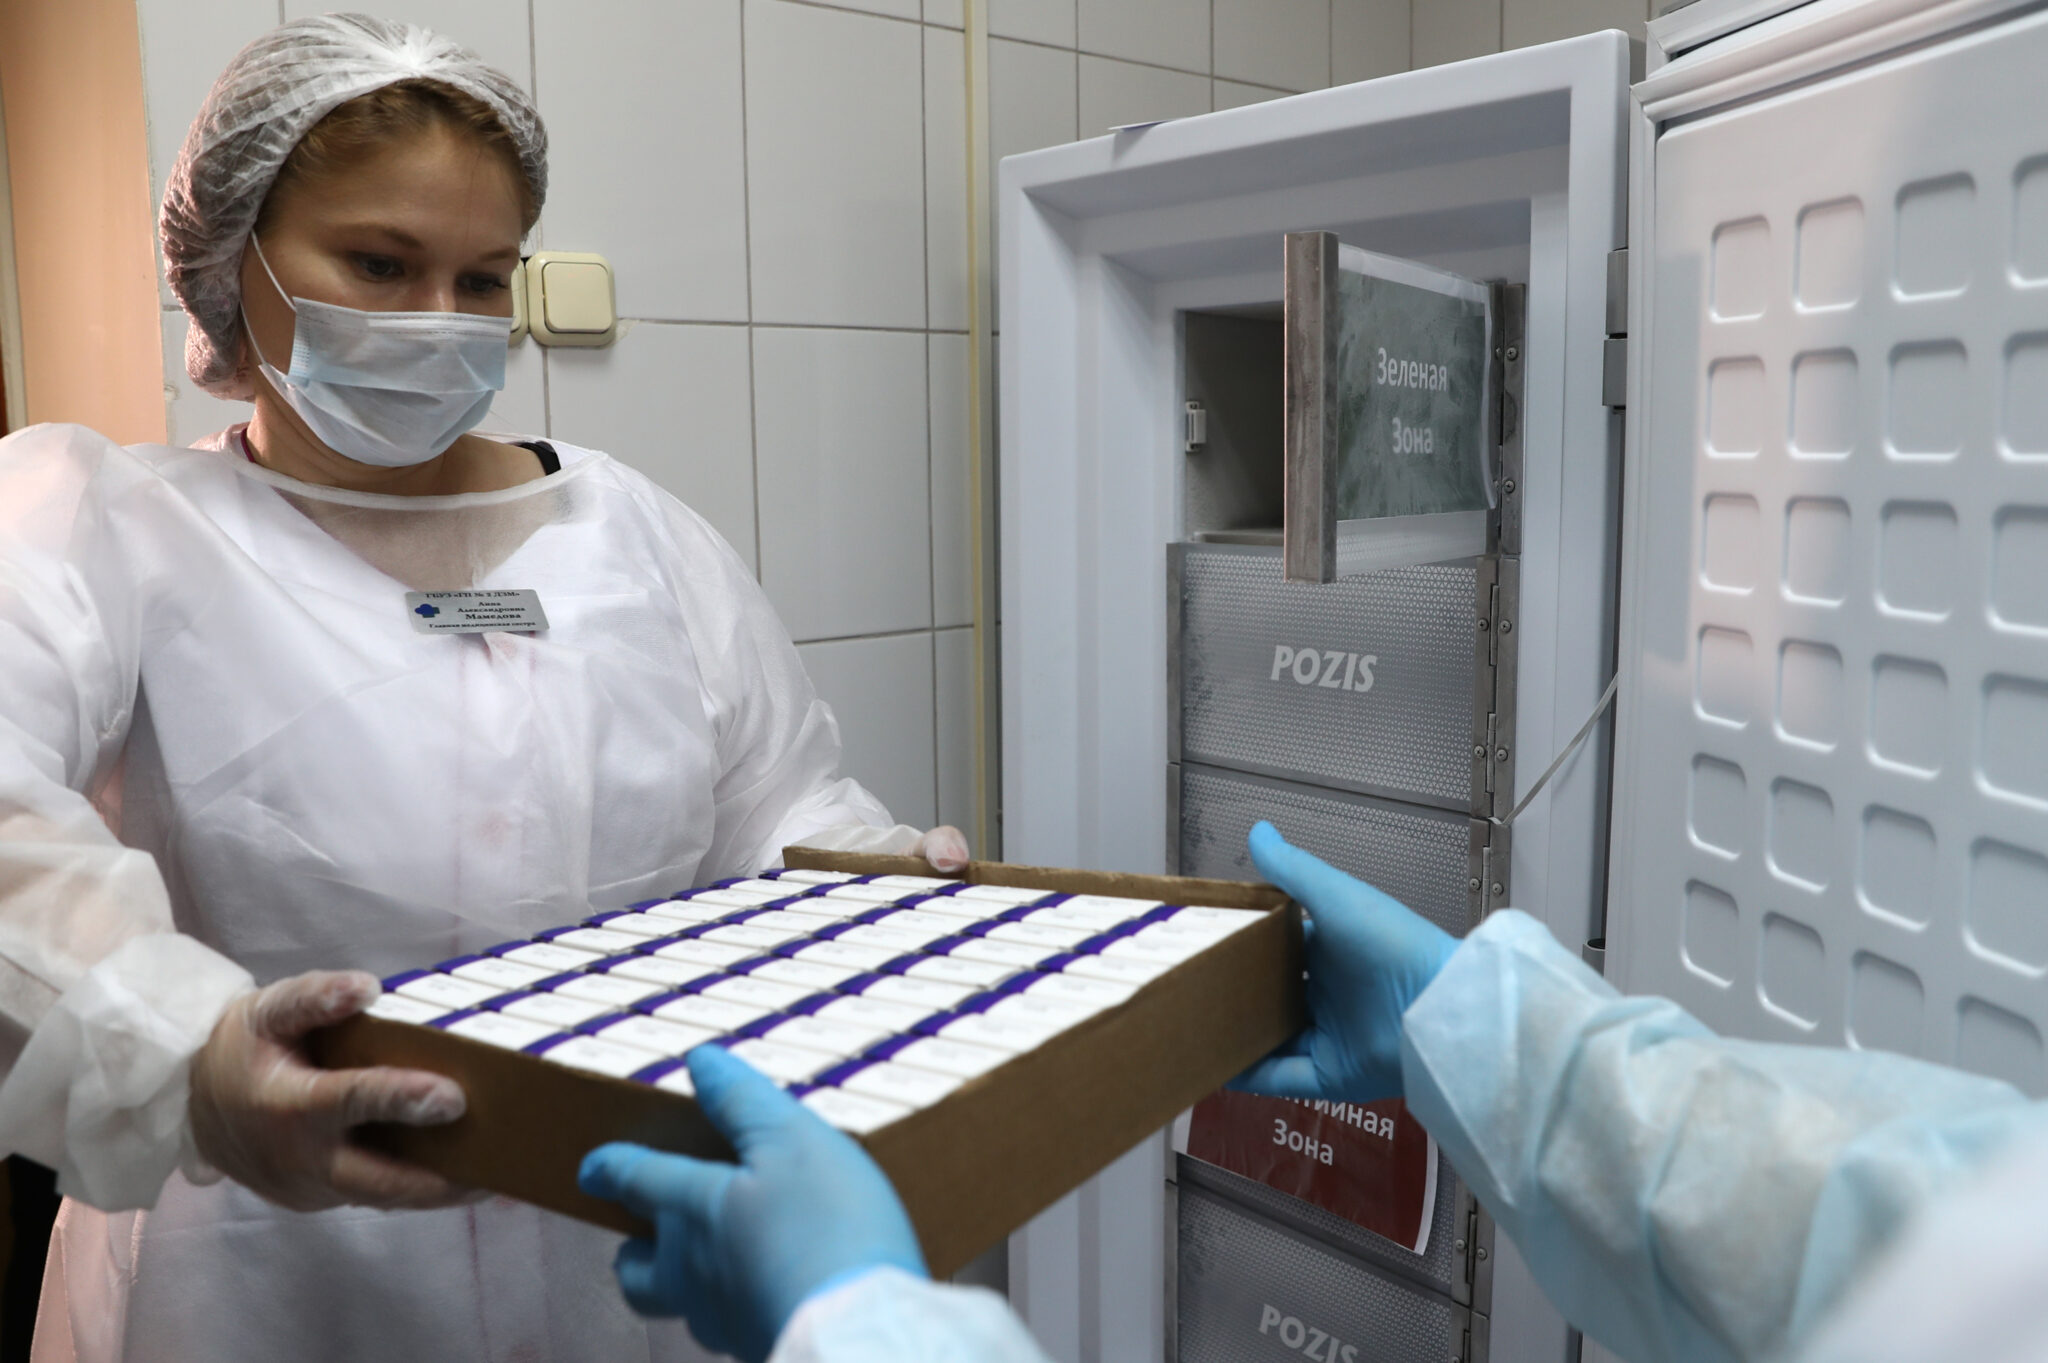 Передача вакцины от коронавируса в московской больнице. Фото Stanislav Krasilnikov/TASS/Scanpix/Leta 